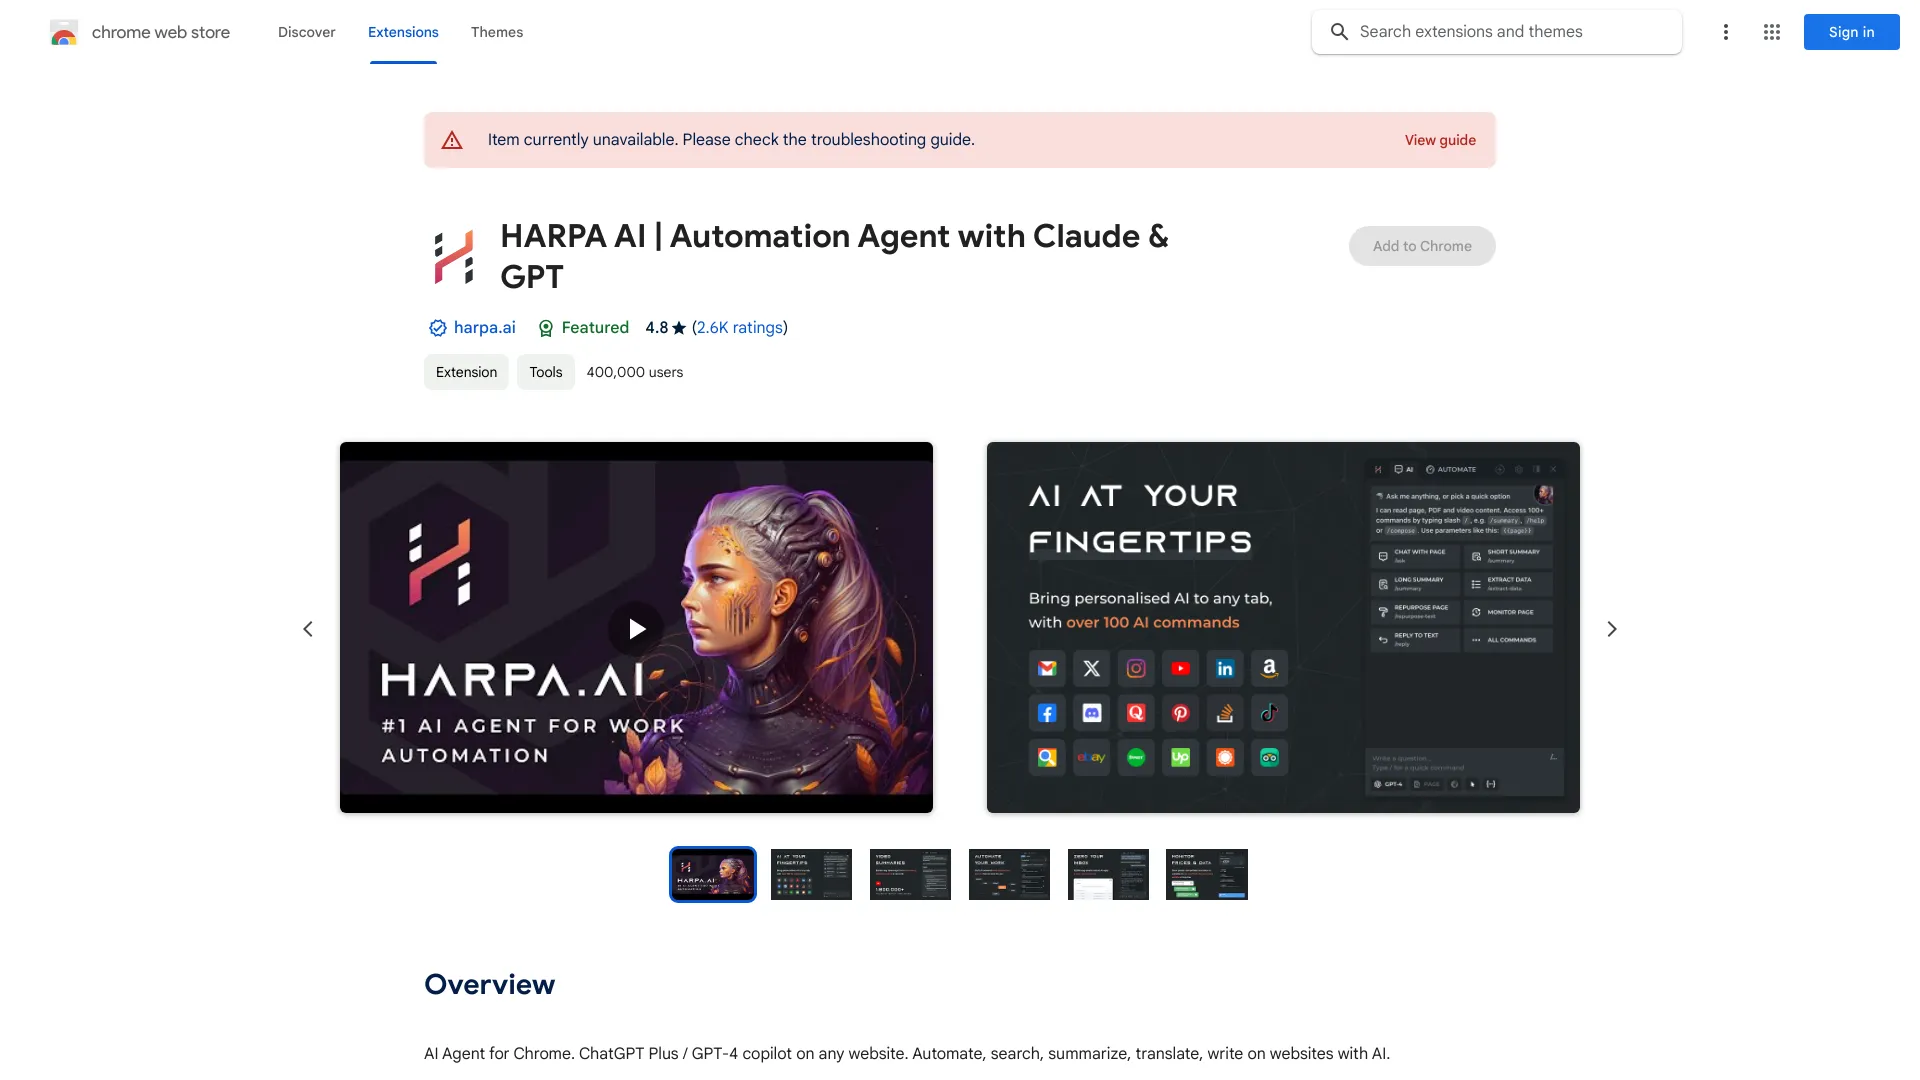 哈帕人工智慧 |自動化代理與 Claude 和 GPT